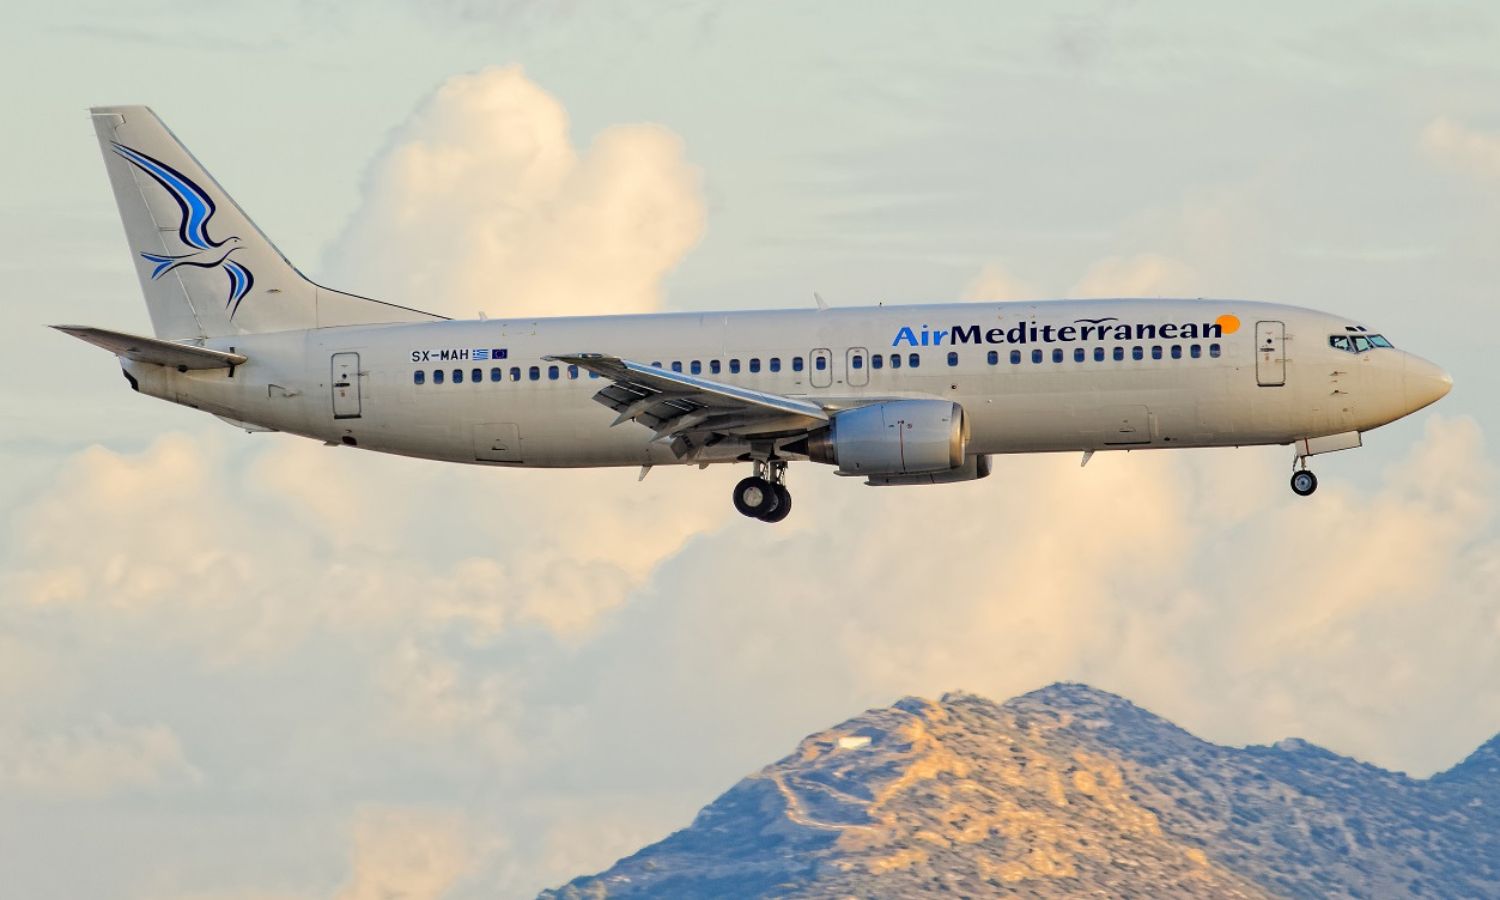 إحدى طائرات شركة المتوسط التي تسير الرحلات بين اليونان وسوريا (صفحة الشركة في فيس بوك)